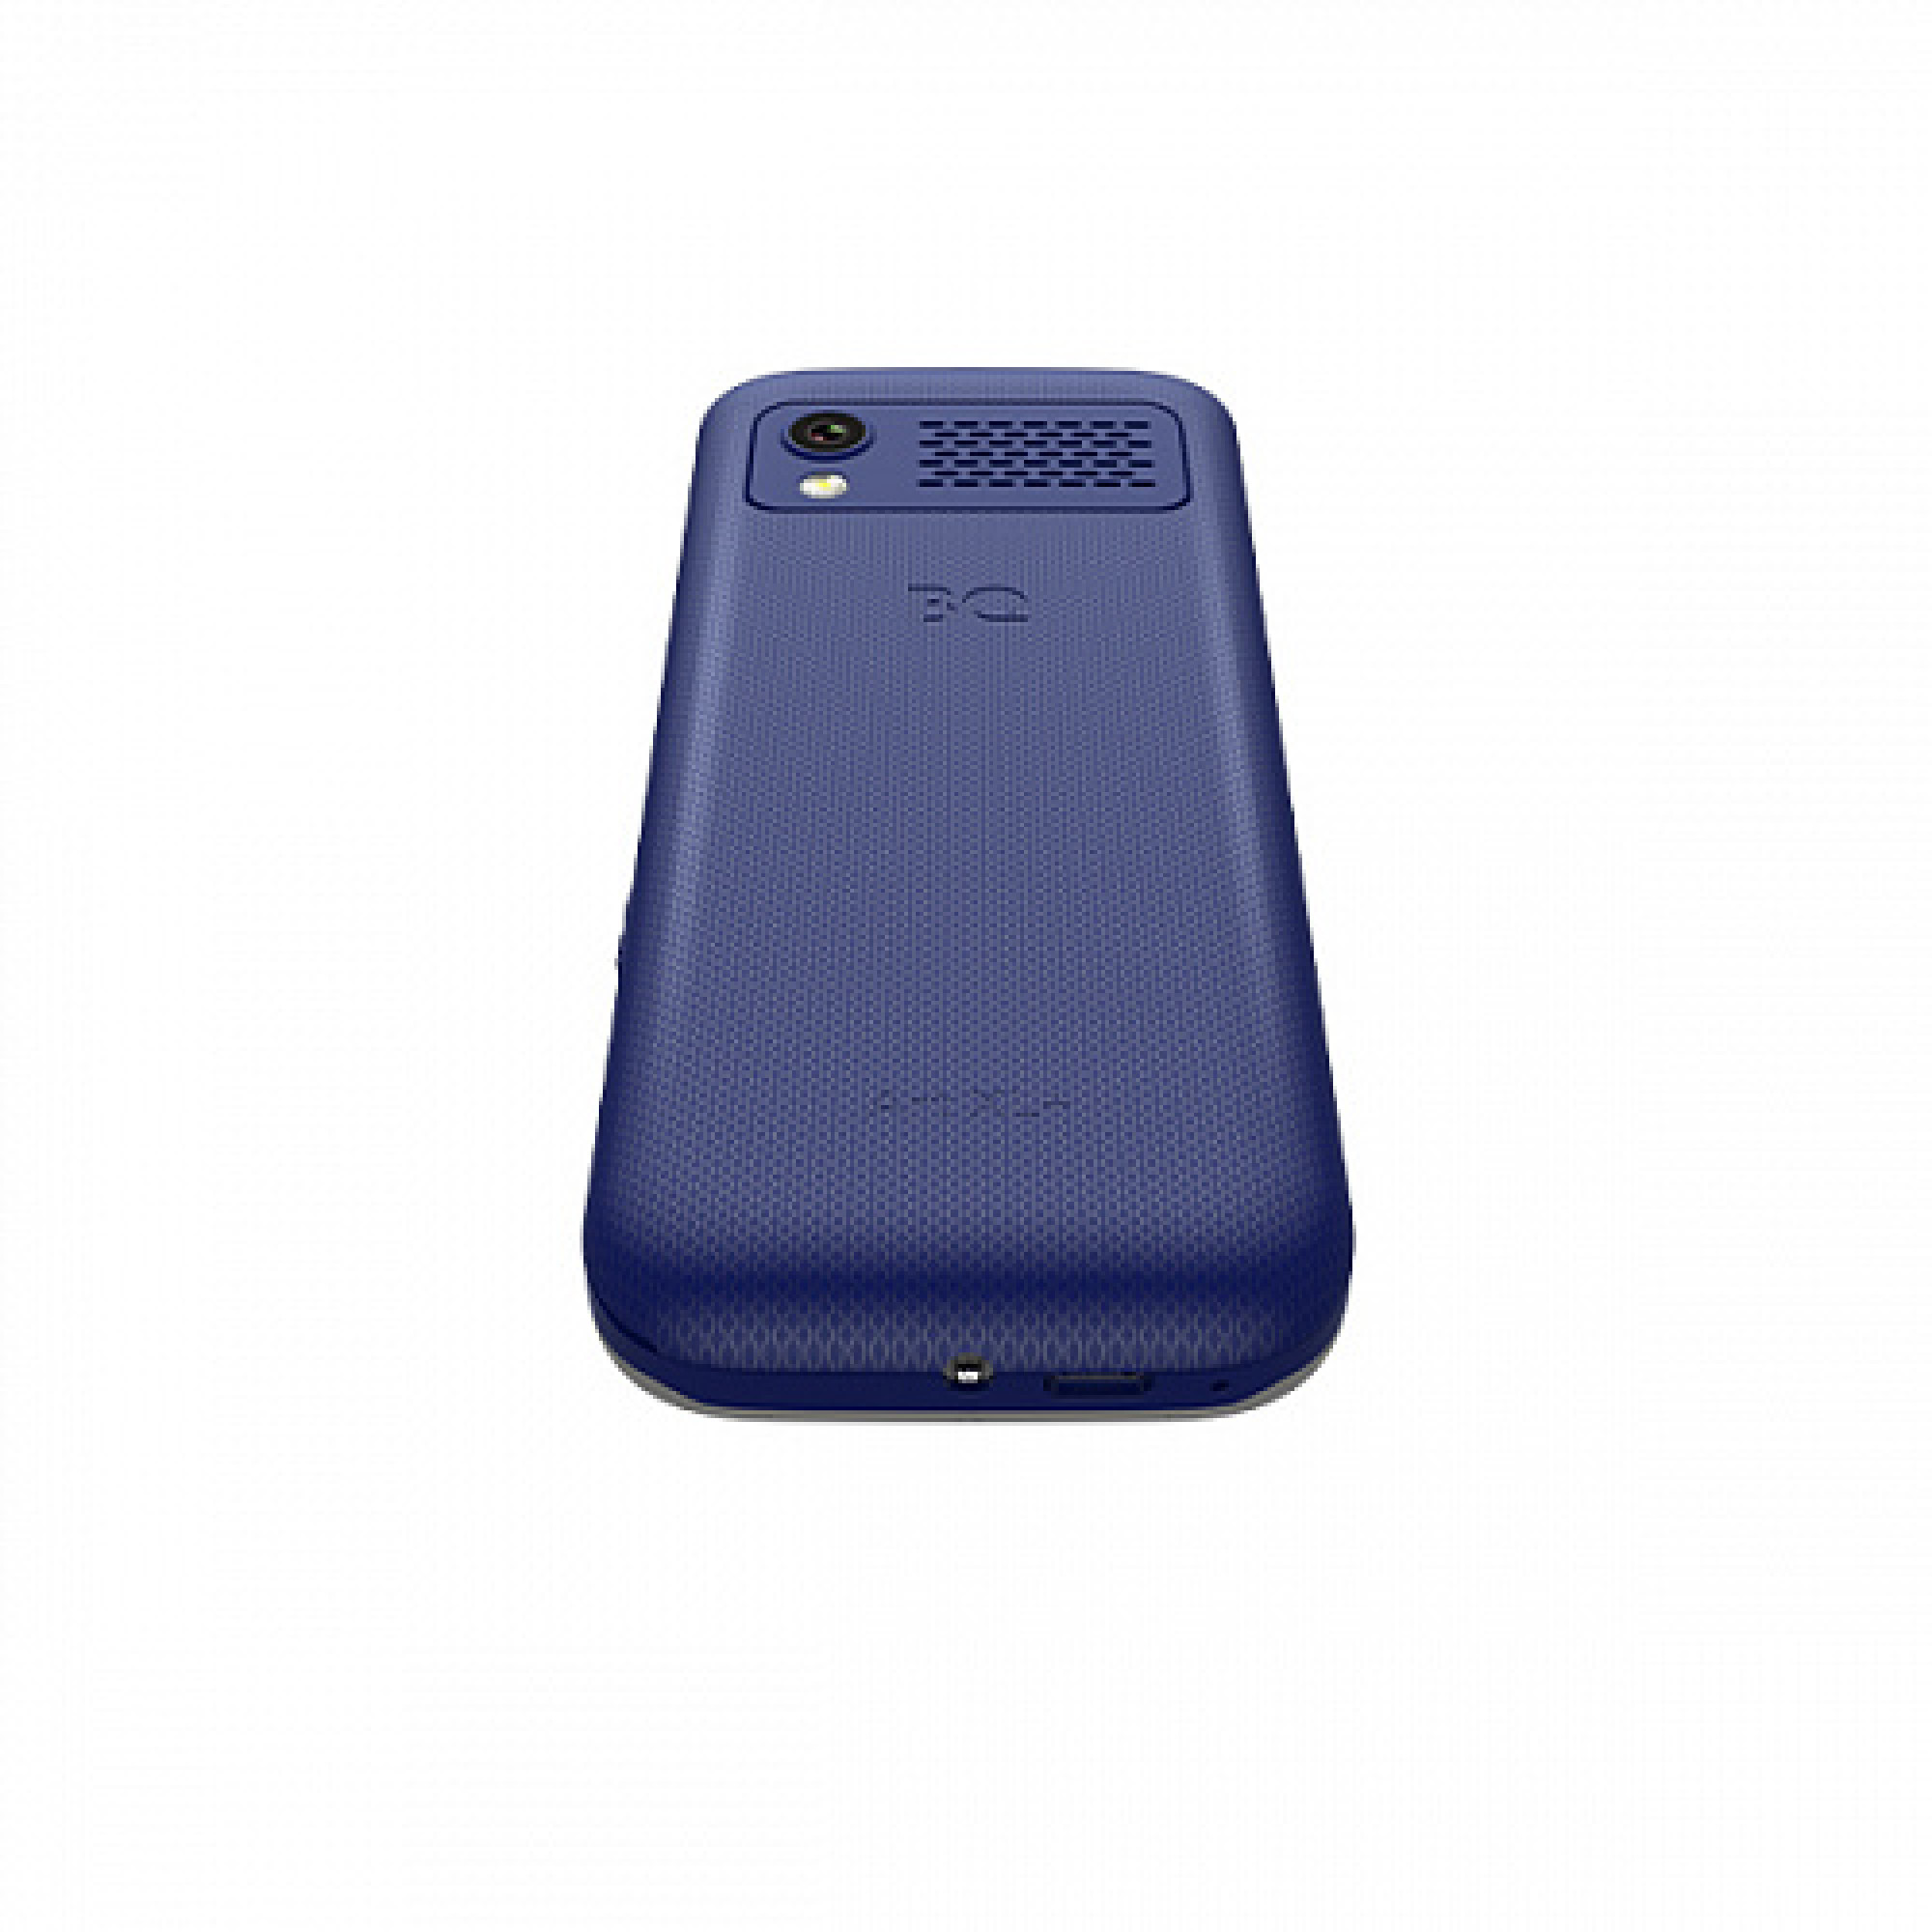 Мобильный телефон BQ BQ-2838 Art XL+ (синий)